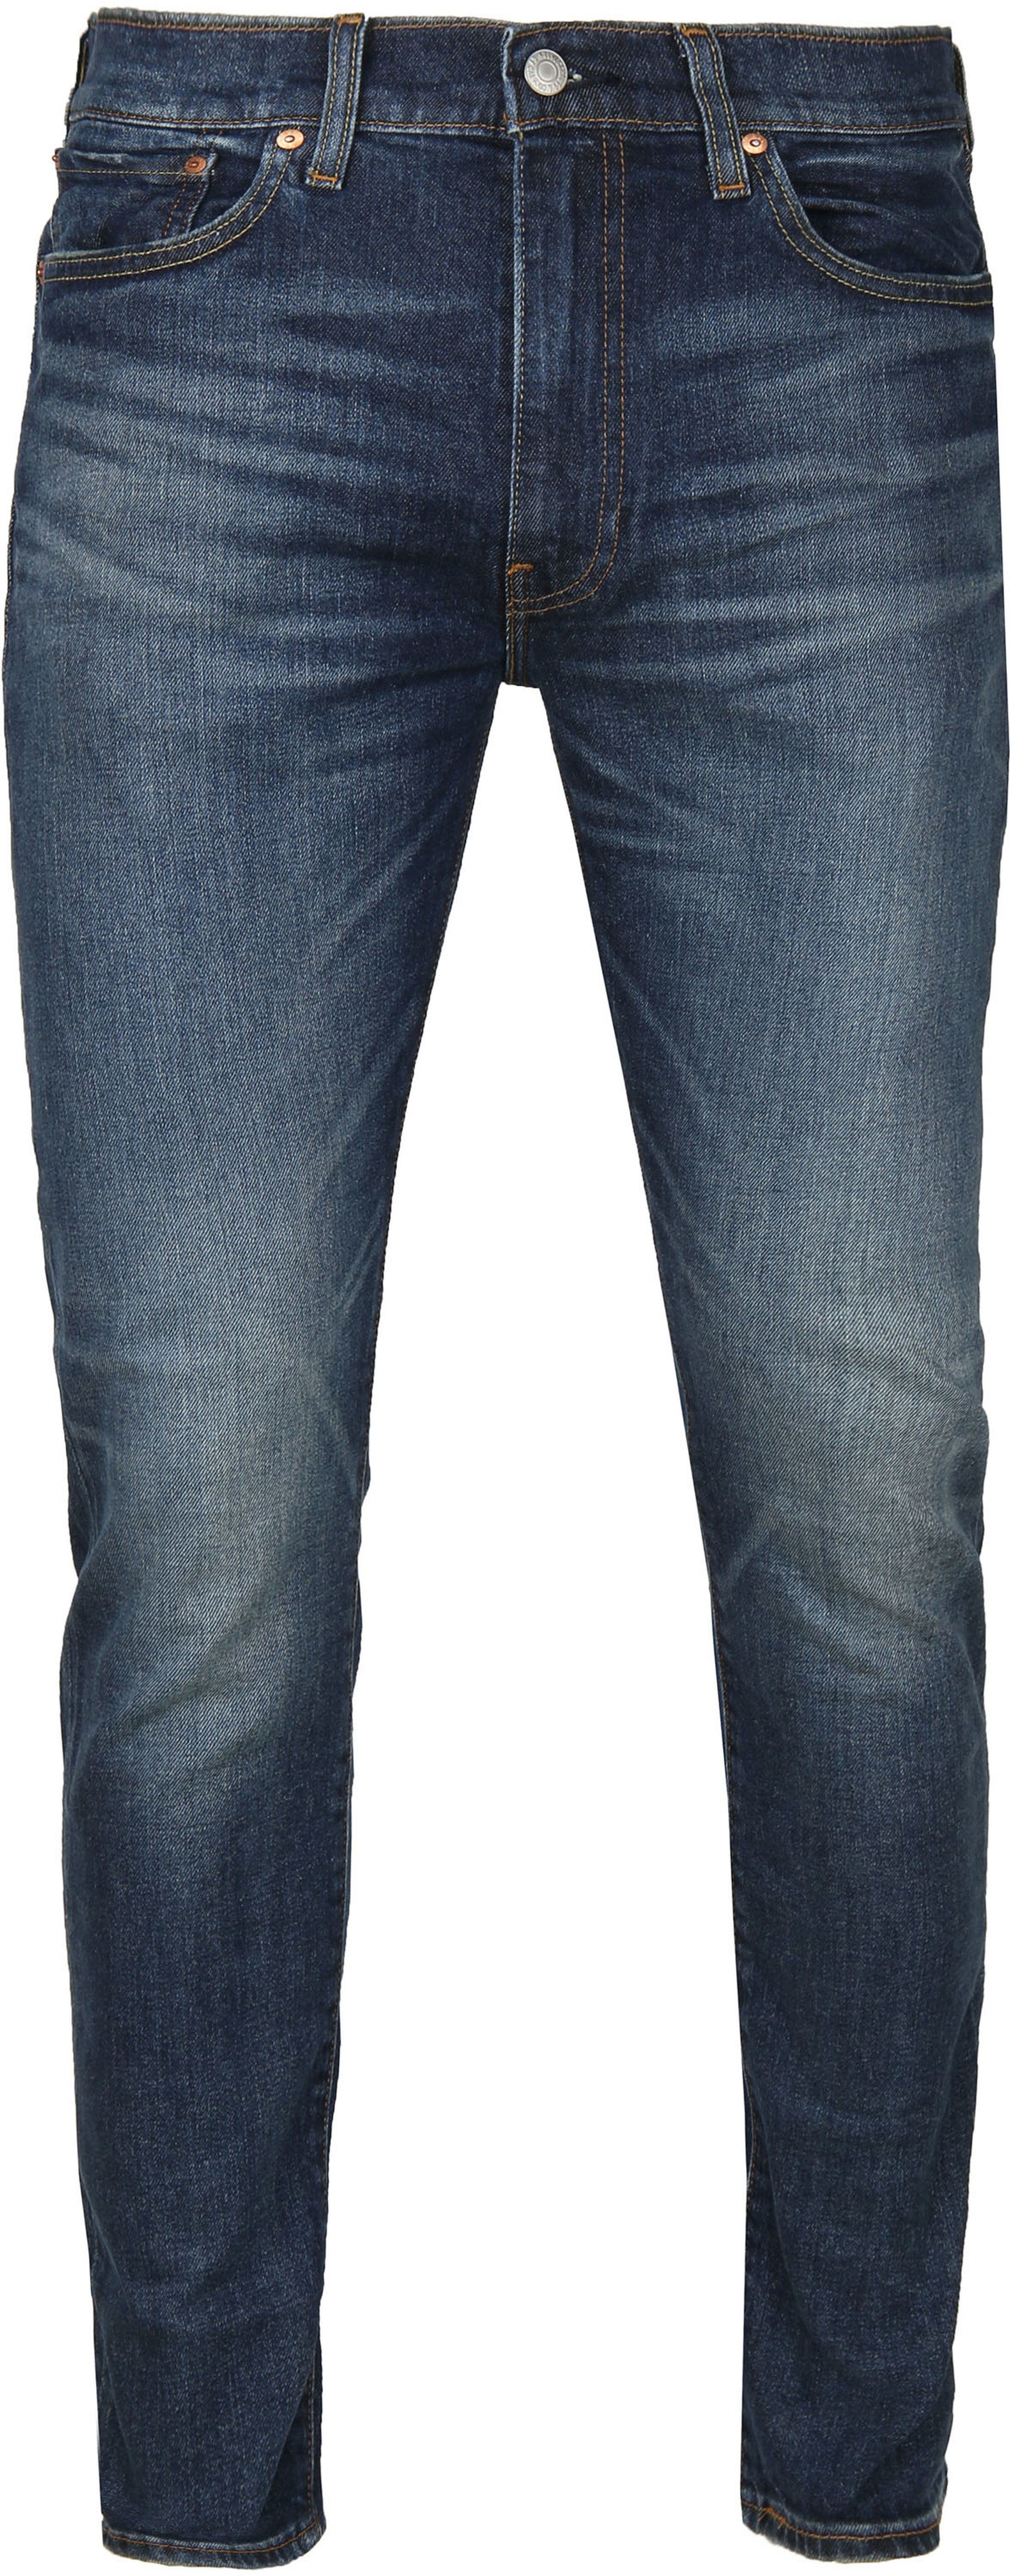 Levis - Levi's 512 jeans slim fit light denim blue size w 31